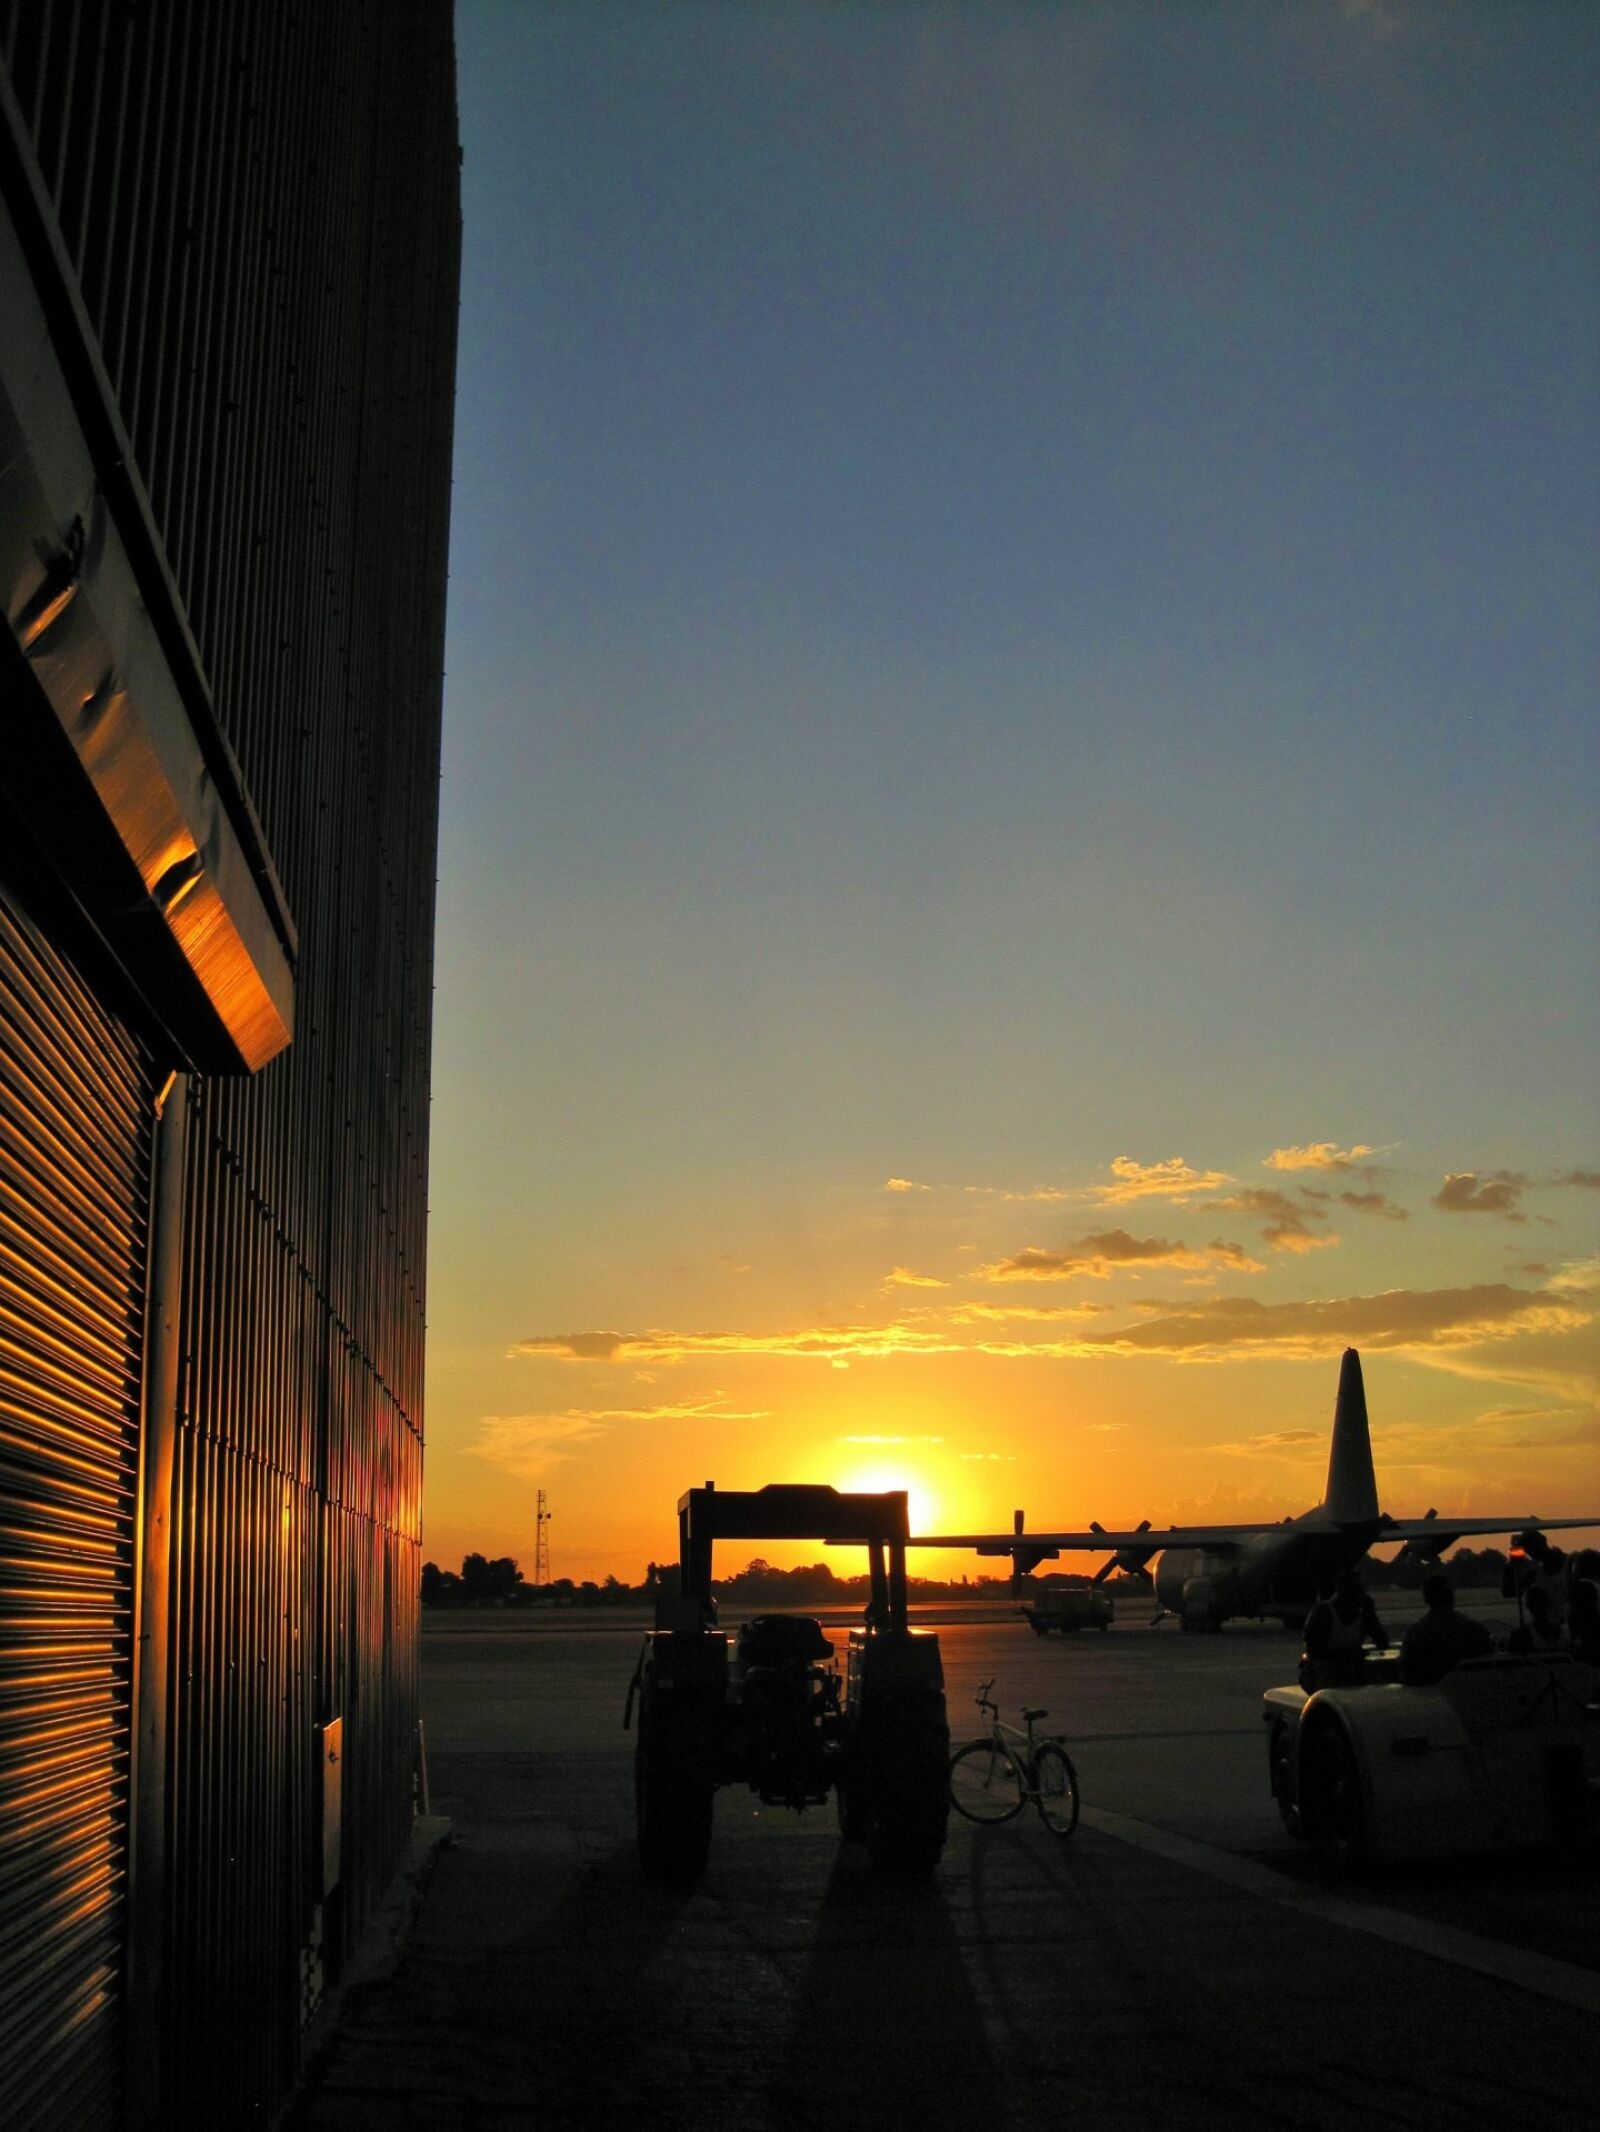 Canon PowerShot SD1200 IS (Digital IXUS 95 IS / IXY Digital 110 IS) sample photo. Sunset, hanger, door photography